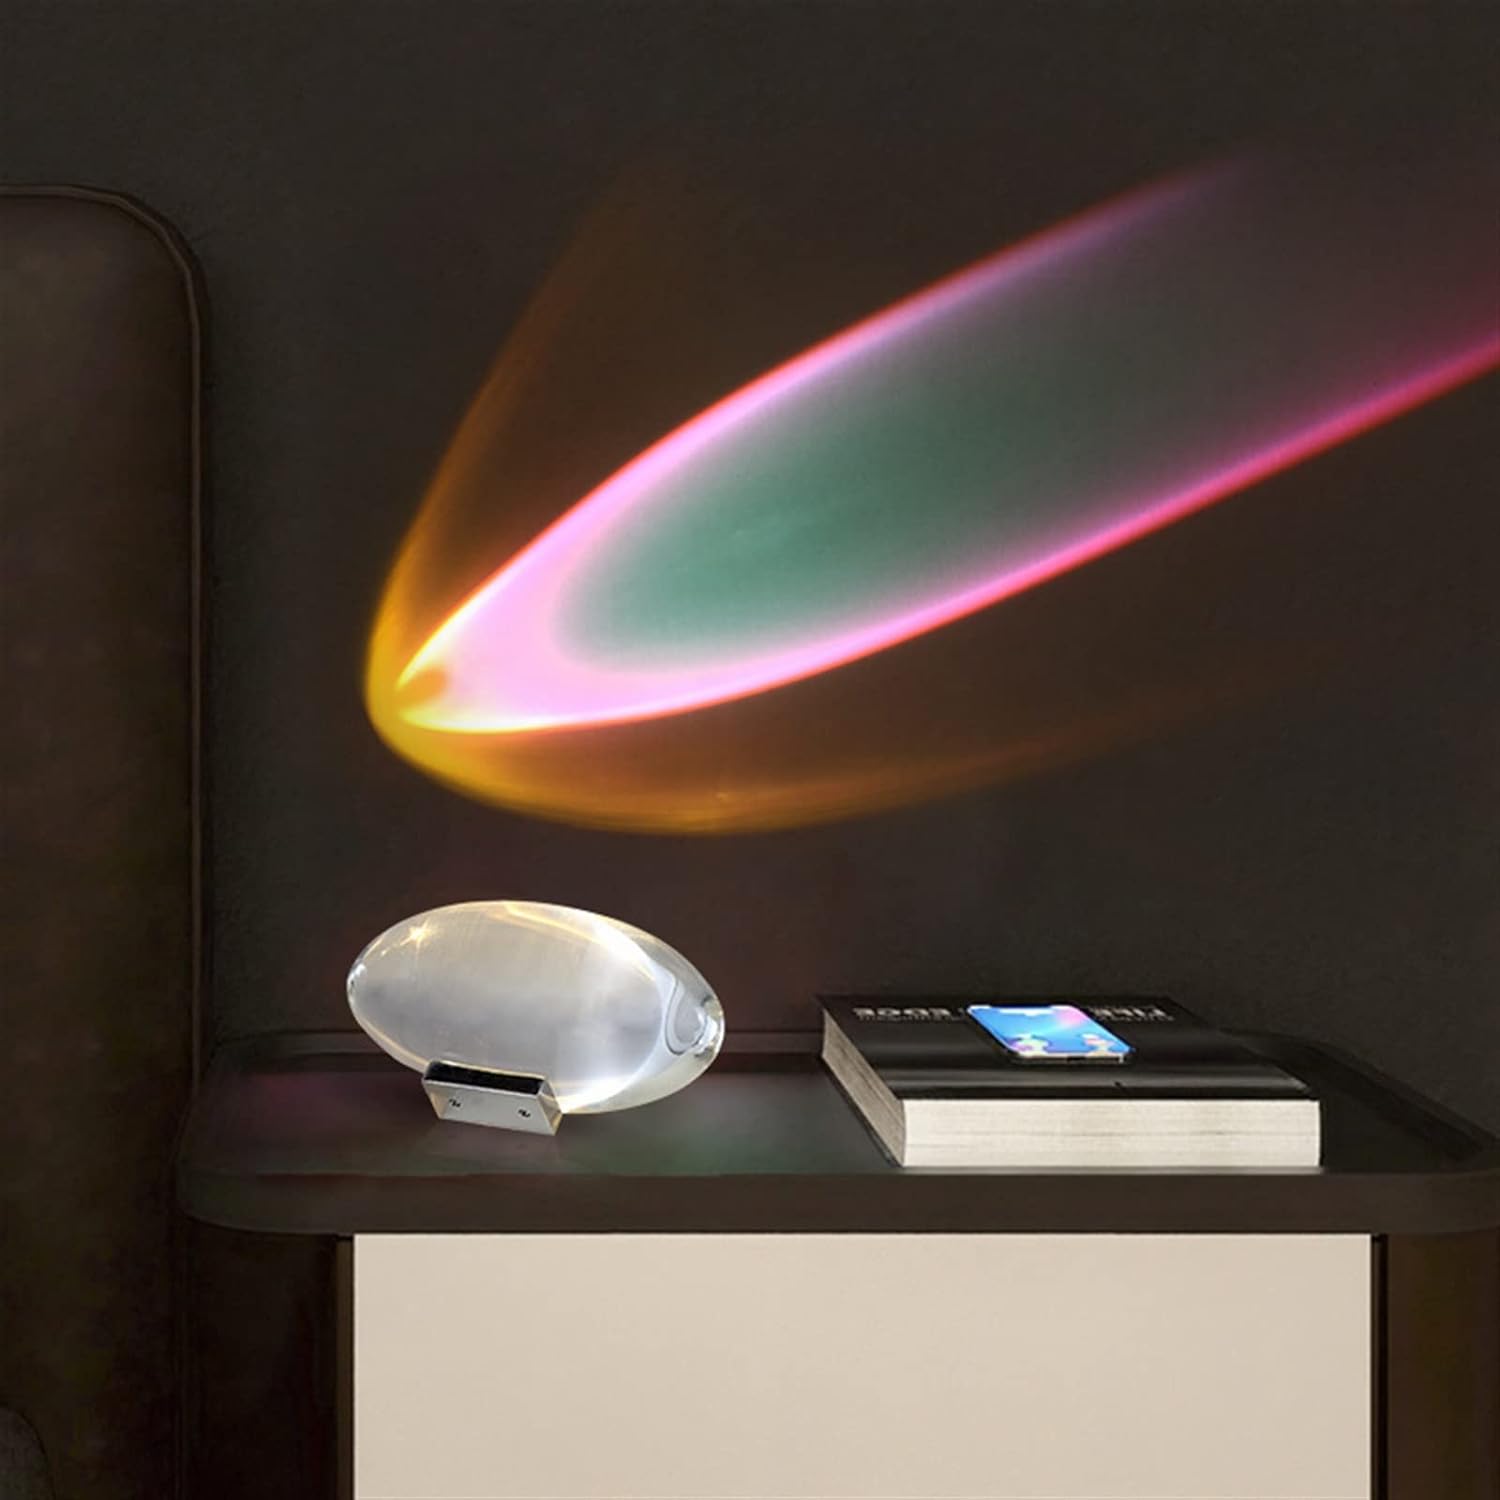 Flarelamp - Schaffen Sie Eine Einzigartige Atmosphäre! Crystal Lamp